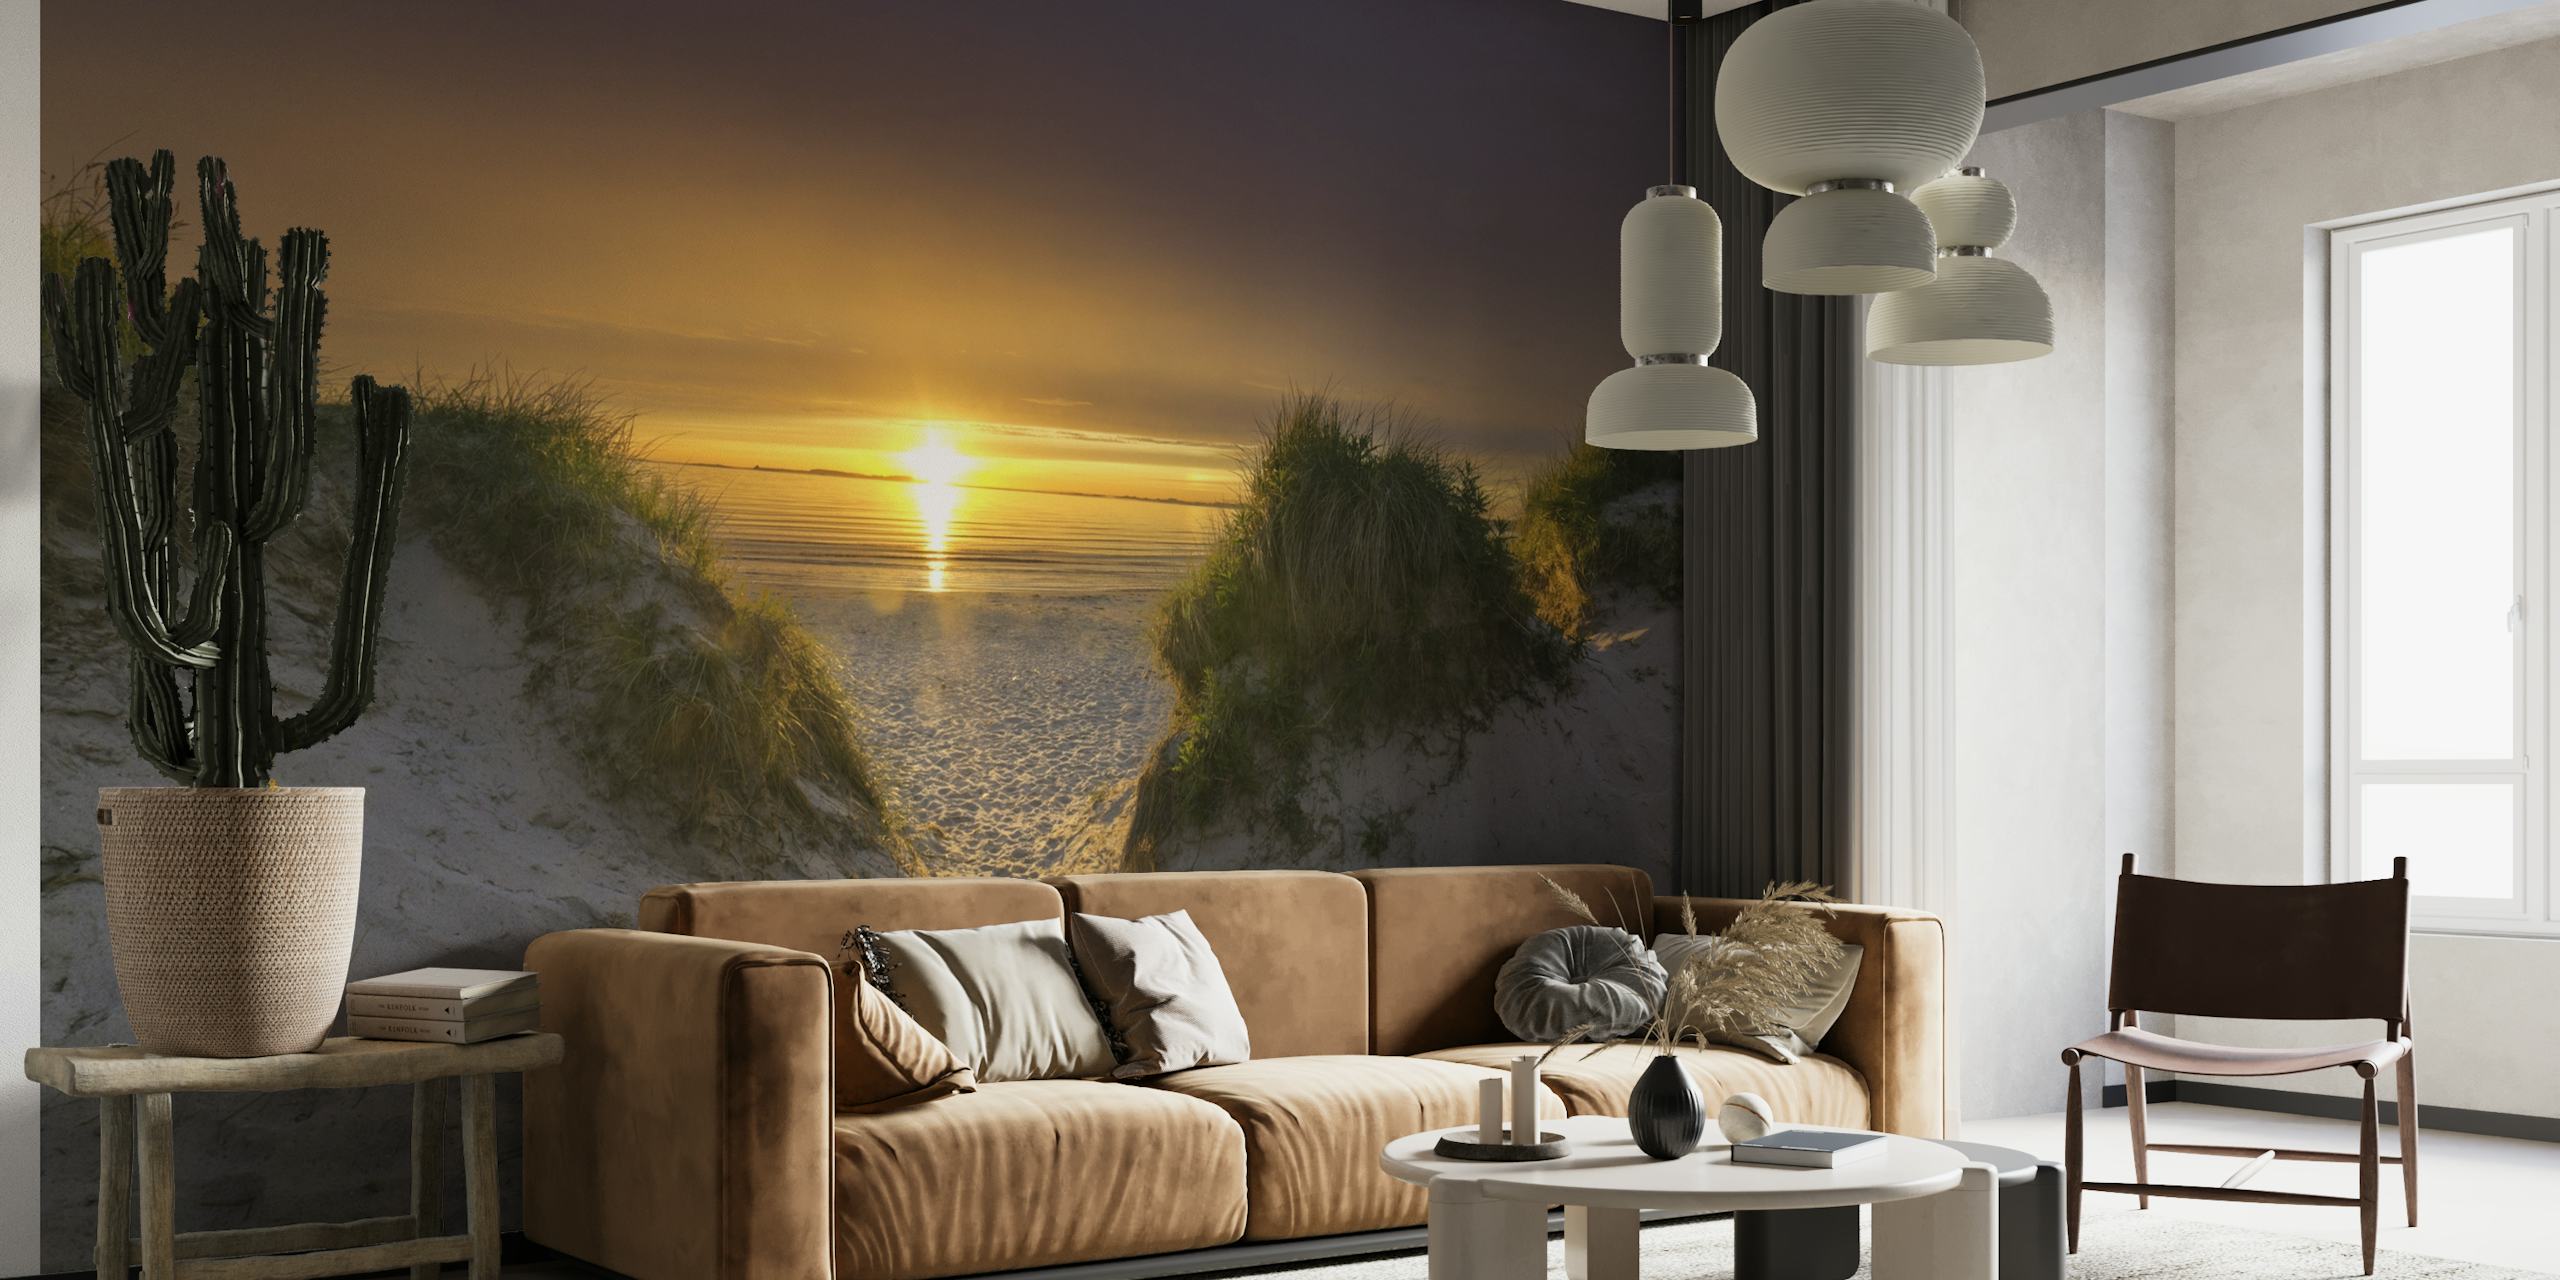 Fototapete am Strand bei Sonnenuntergang mit Sandweg, der durch die Dünen zum Meer führt